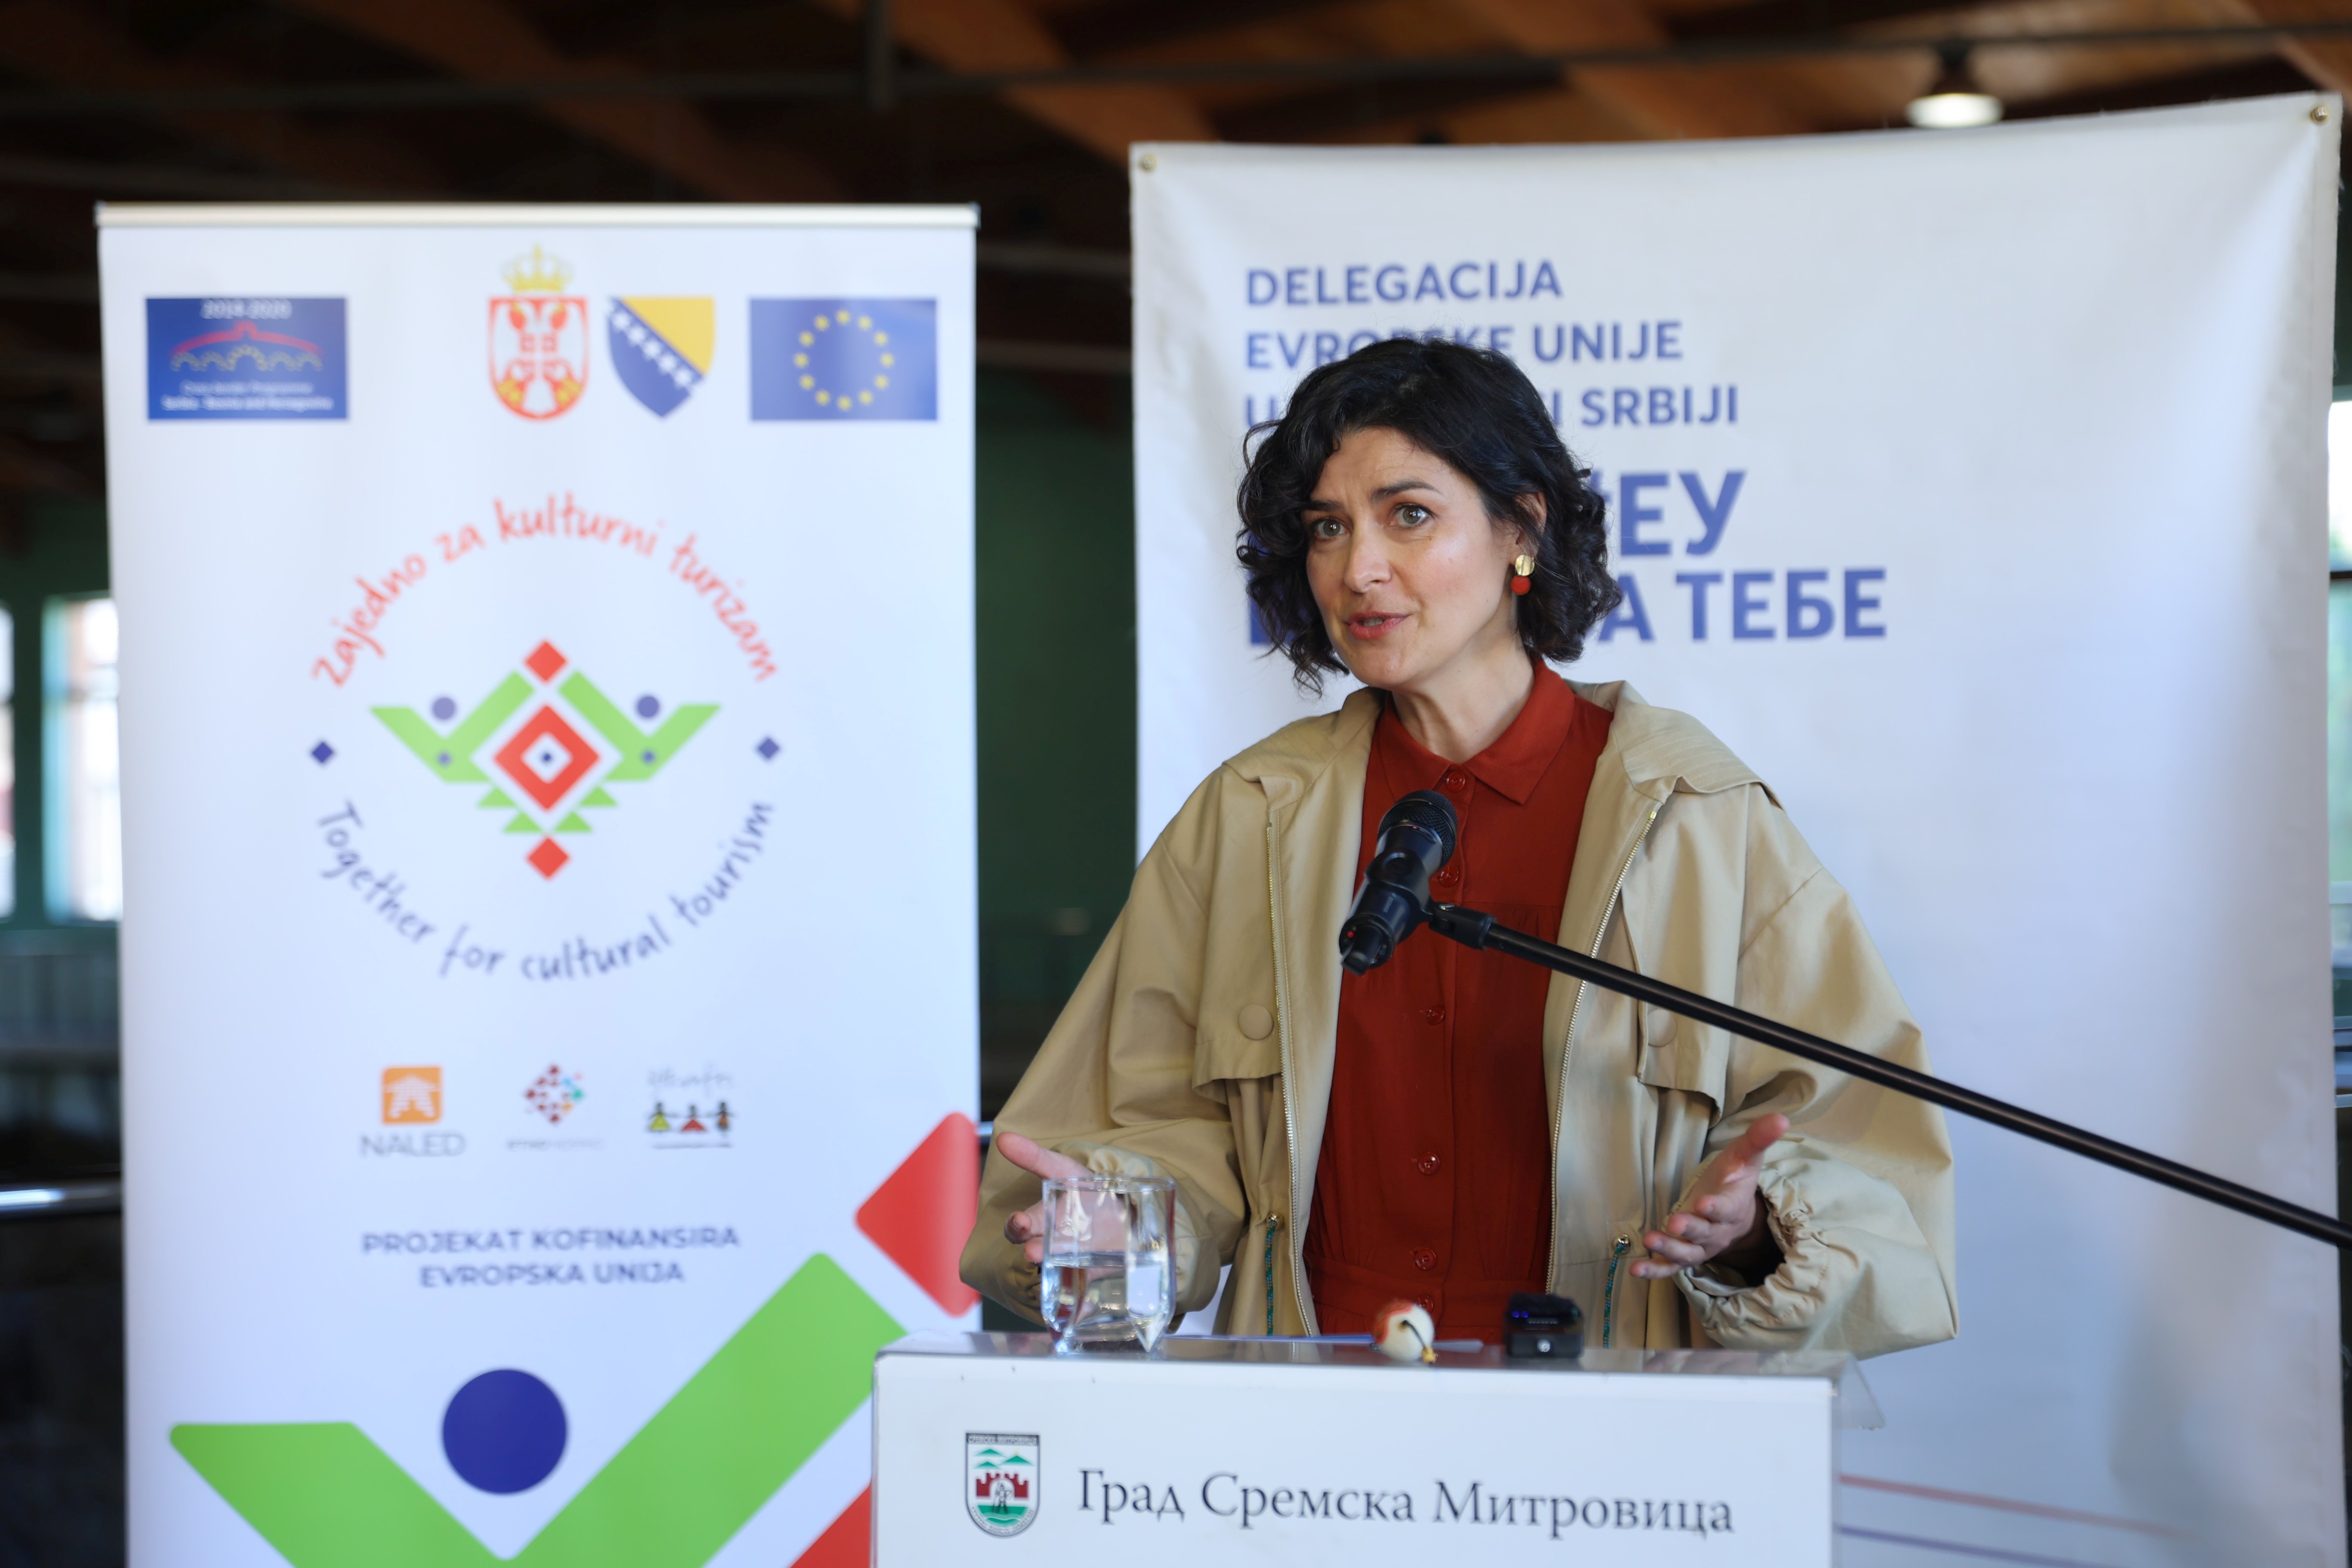 Гојковић на Првој регионалној колонији пустовања вуне: Омаж народном стваралаштву и подстицај оснаживању жена